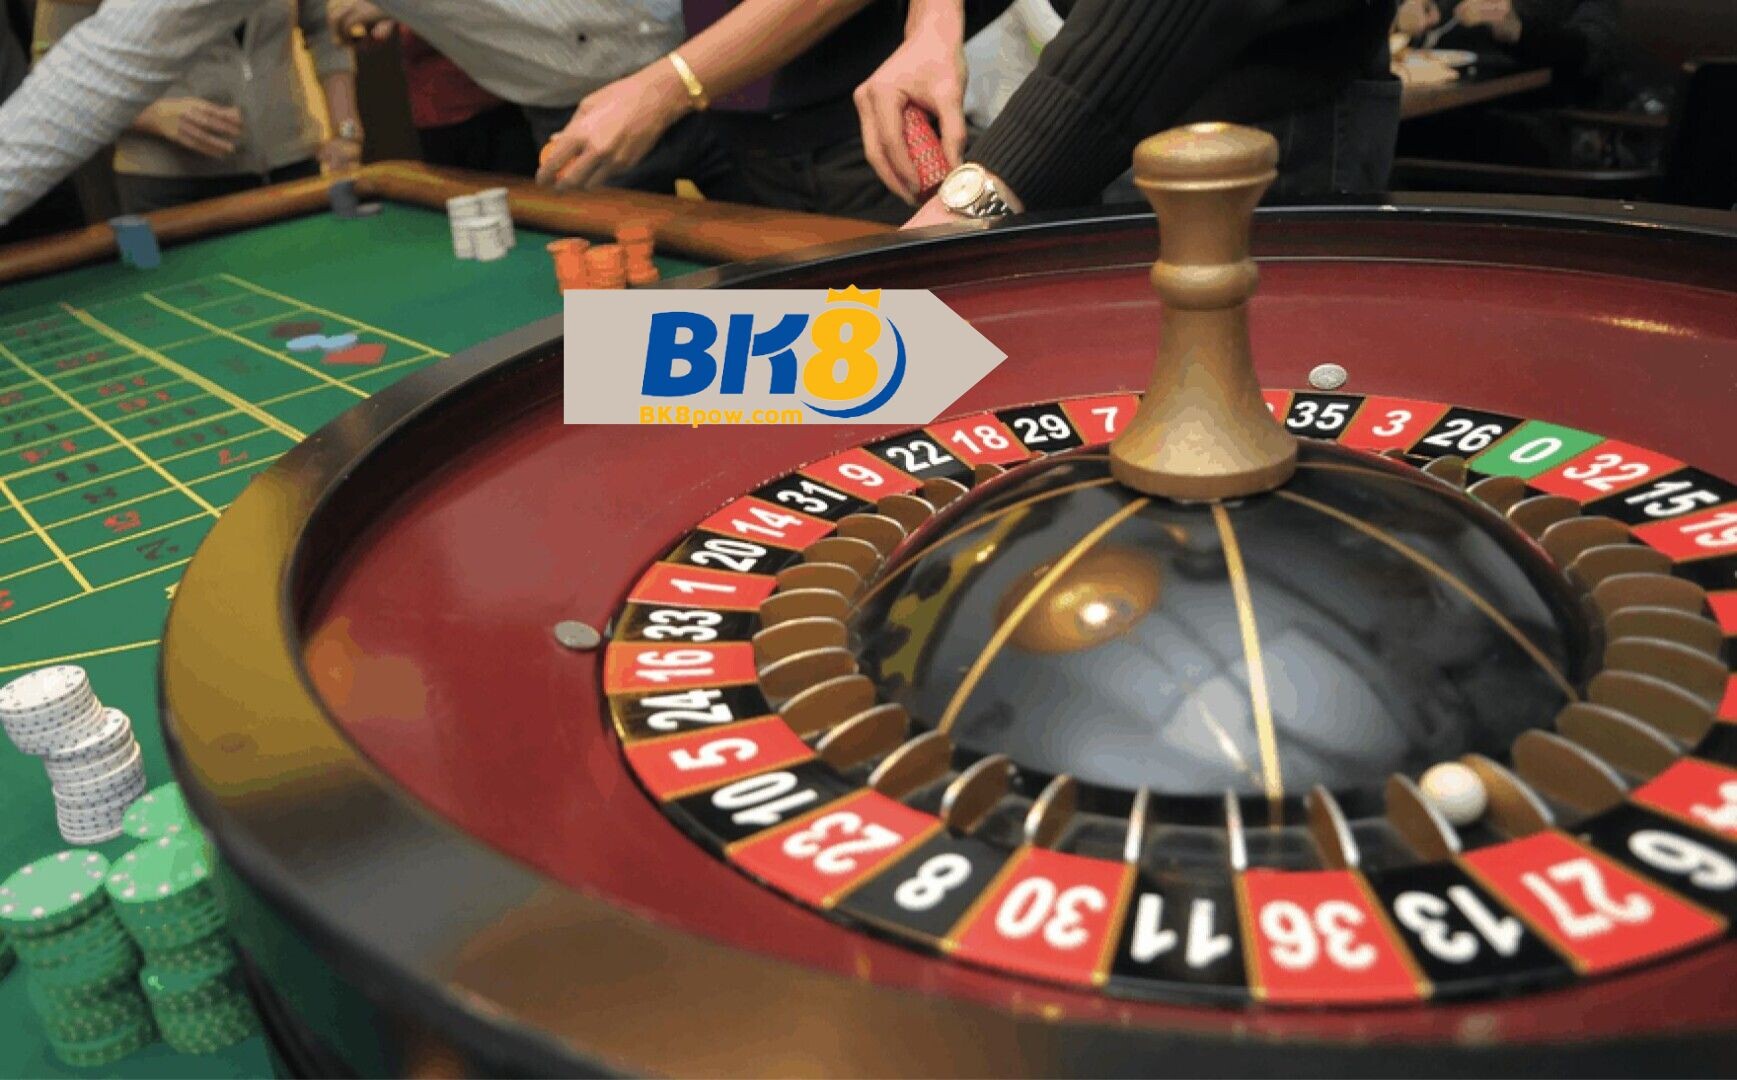 Kinh nghiệm cược roulette BK8 luôn thắng